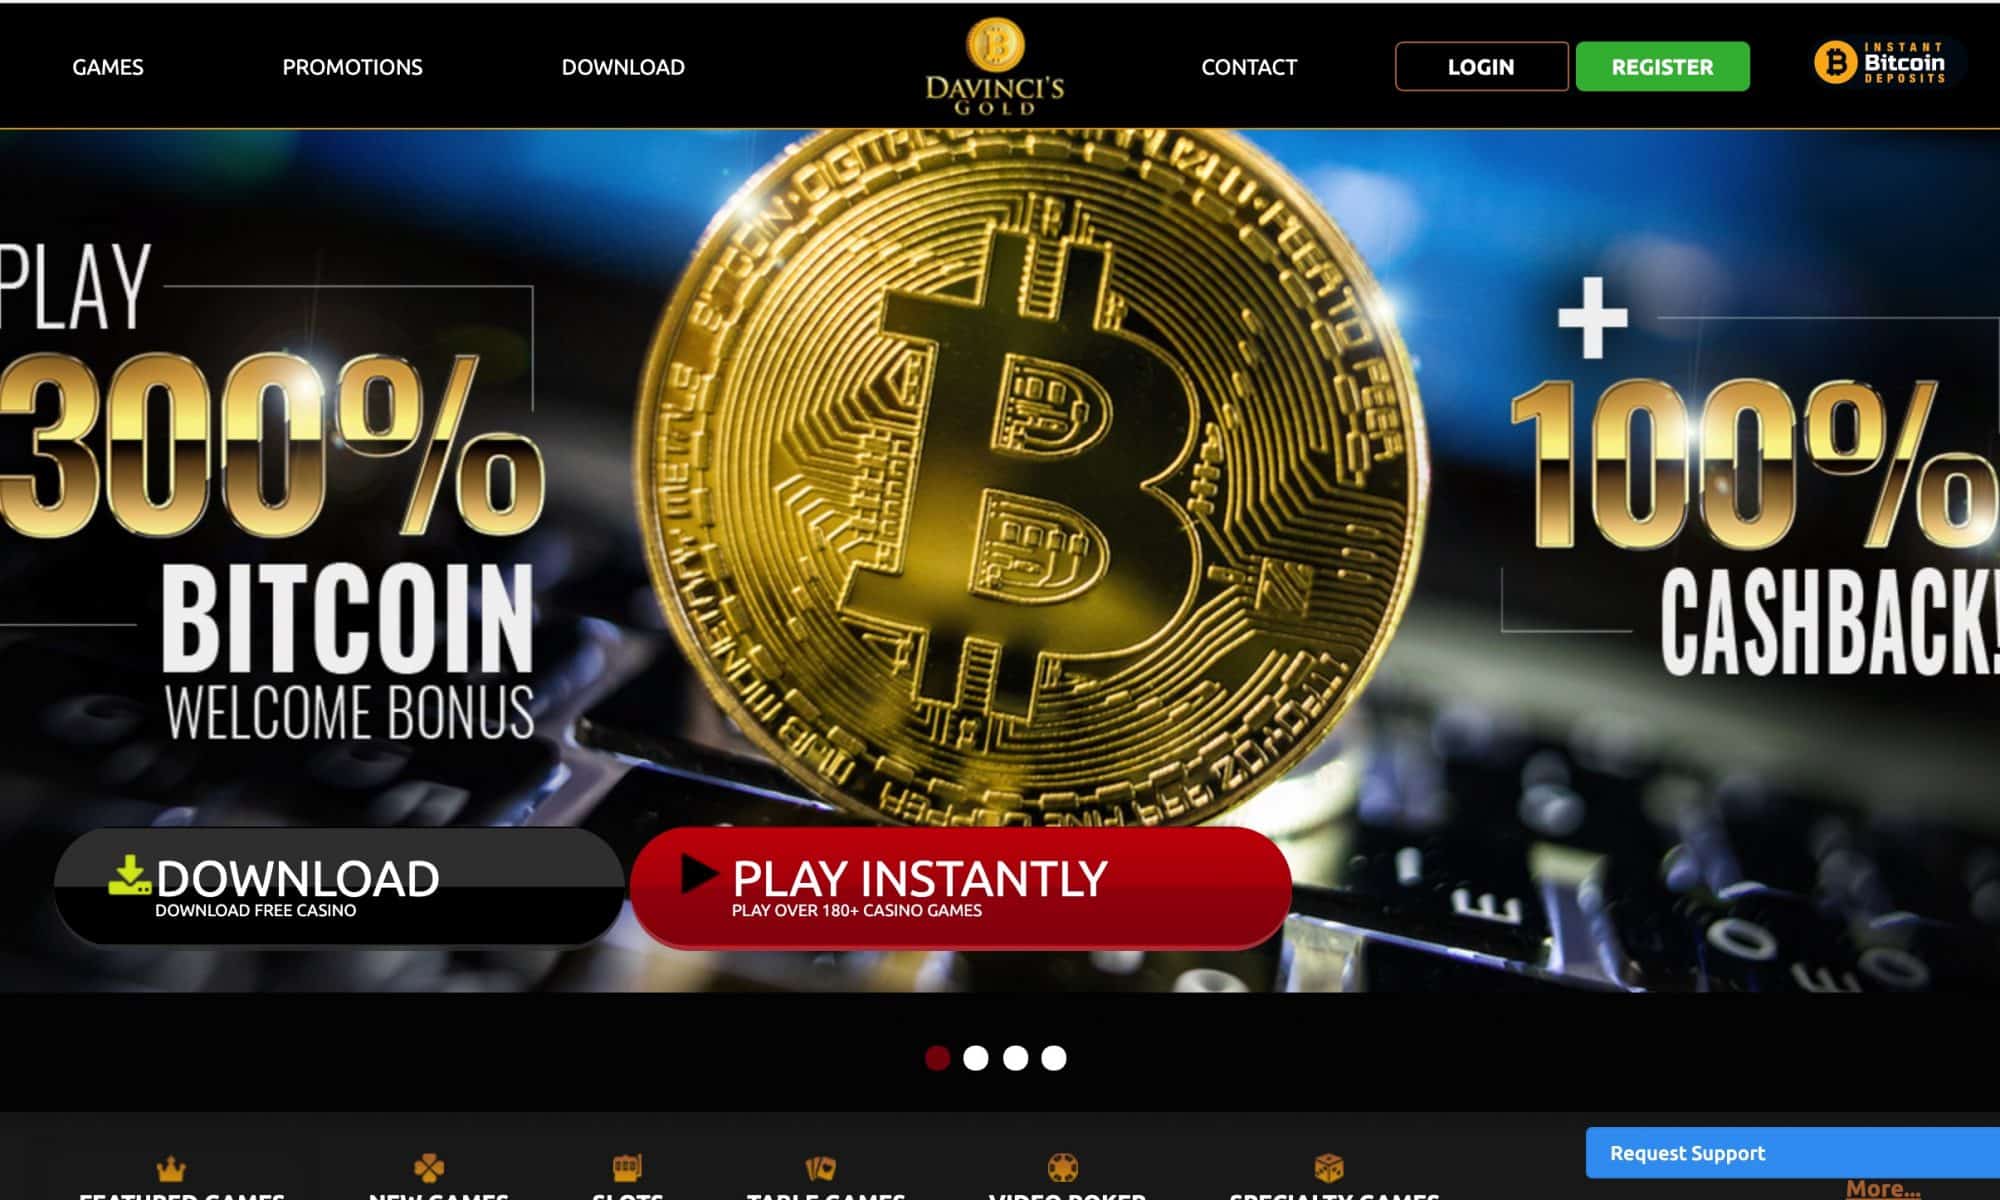 DaVinci's Gold Casino - 300% bitcoin bonus + 100% cashback